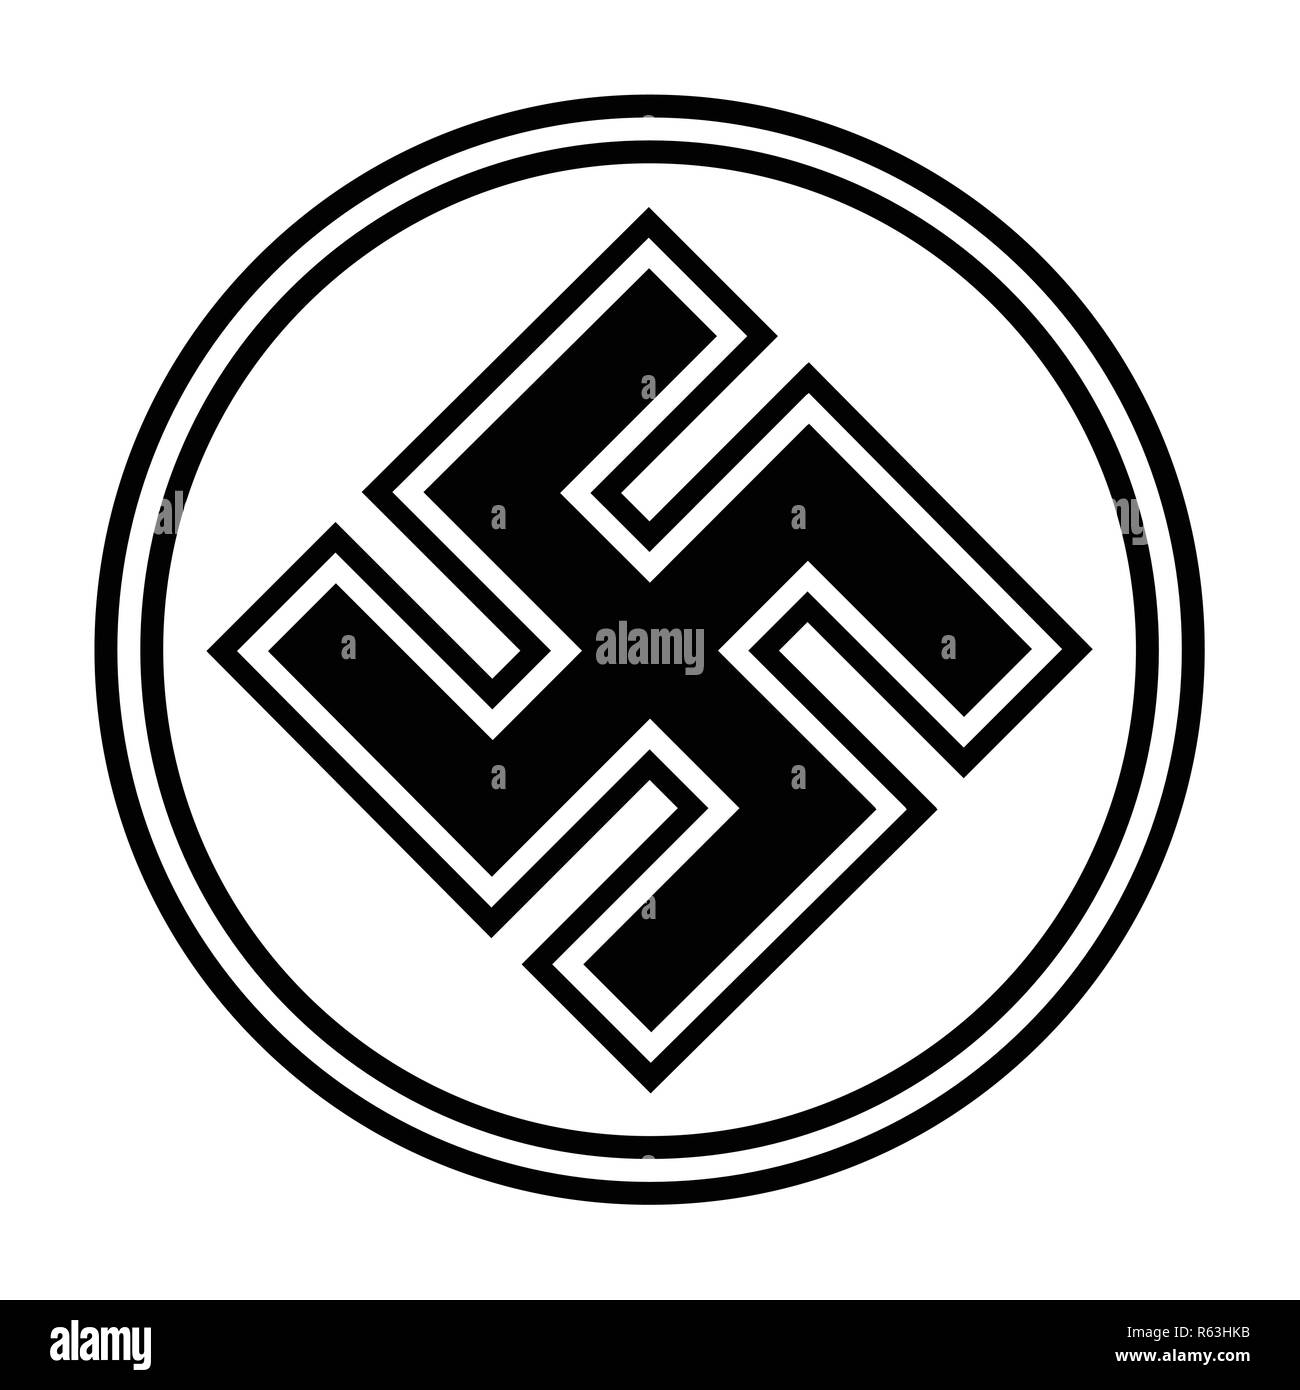 nazi symbol black and white